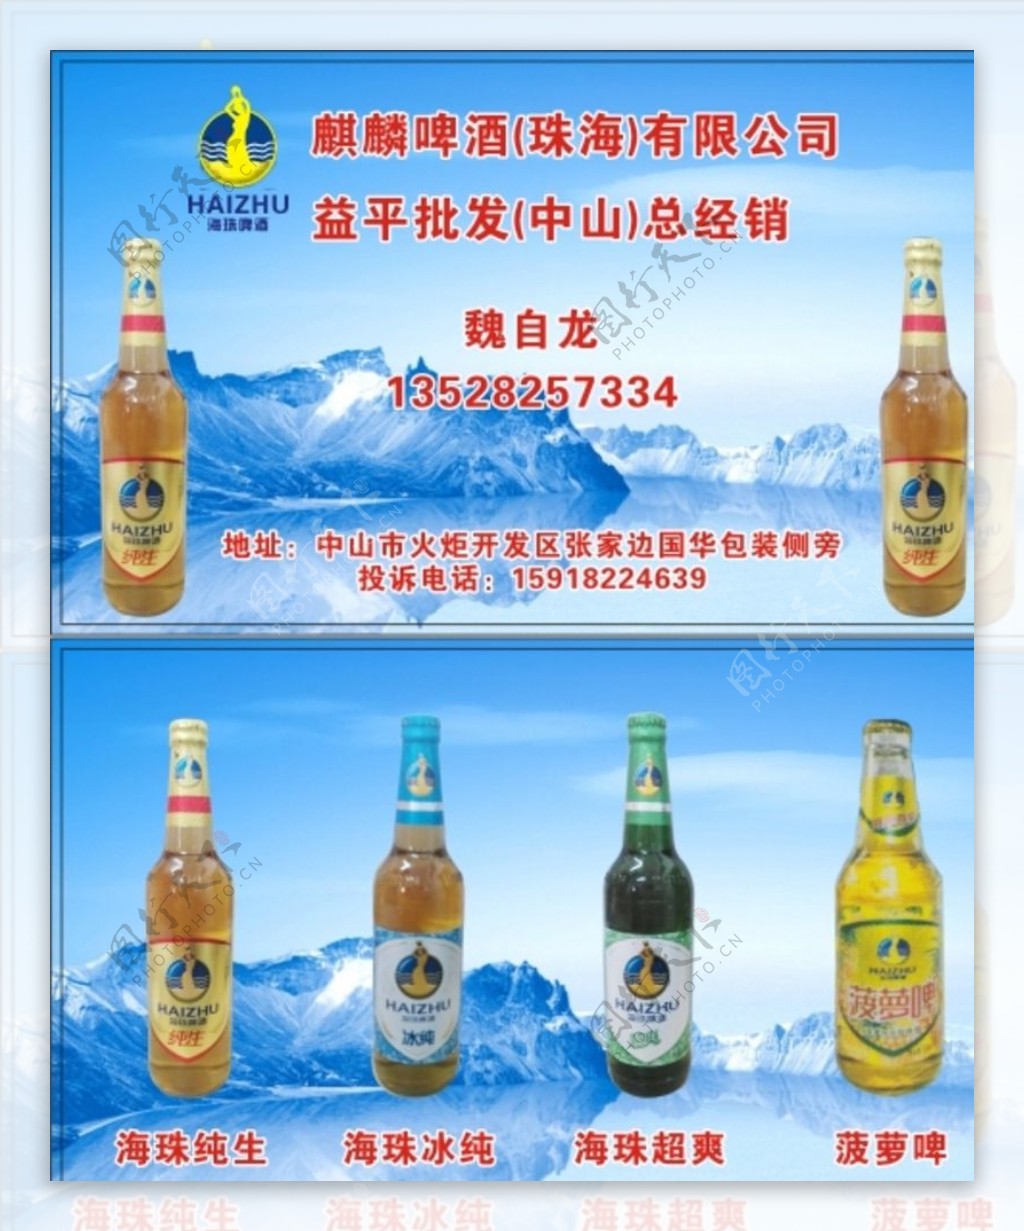 麒麟啤酒新海珠名片图片